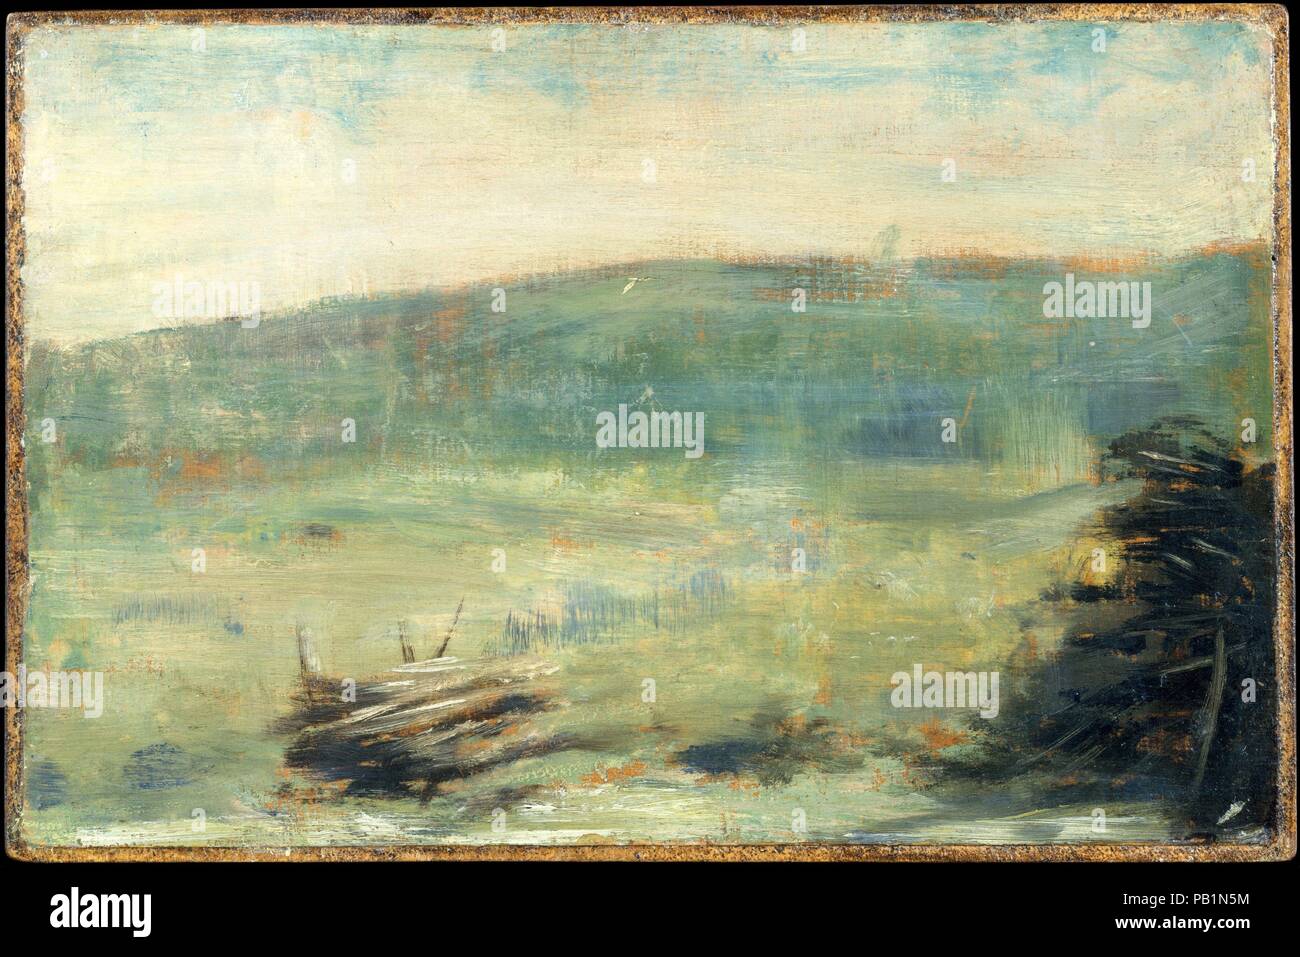 Paysage à Saint-Ouen. Artiste : Georges Seurat (français, Paris 1859-1891 Paris). Dimensions : hors tout 6 7/8 x 10 3/8 in. (17,5 x 26,4 cm) ; surface peinte 6 5/8 x 10 in. (16,8 x 25,4 cm). Date : 1878 ou 1879. Datée de 1878 ou 1879, c'est la plus ancienne des esquisses à l'huile paysage de Seurat. Son bon ami, l'artiste Aman-Jean, se souvenait de lui peindre sur site à Saint-Ouen, une banlieue nord de Paris. Seurat introduit, orange-chaudes teintes marron dans la composition en permettant le support de panneau de bois à montrer à travers entre ses coups de pinceau. Ce travail a été à l'origine partie d'un double-face Banque D'Images